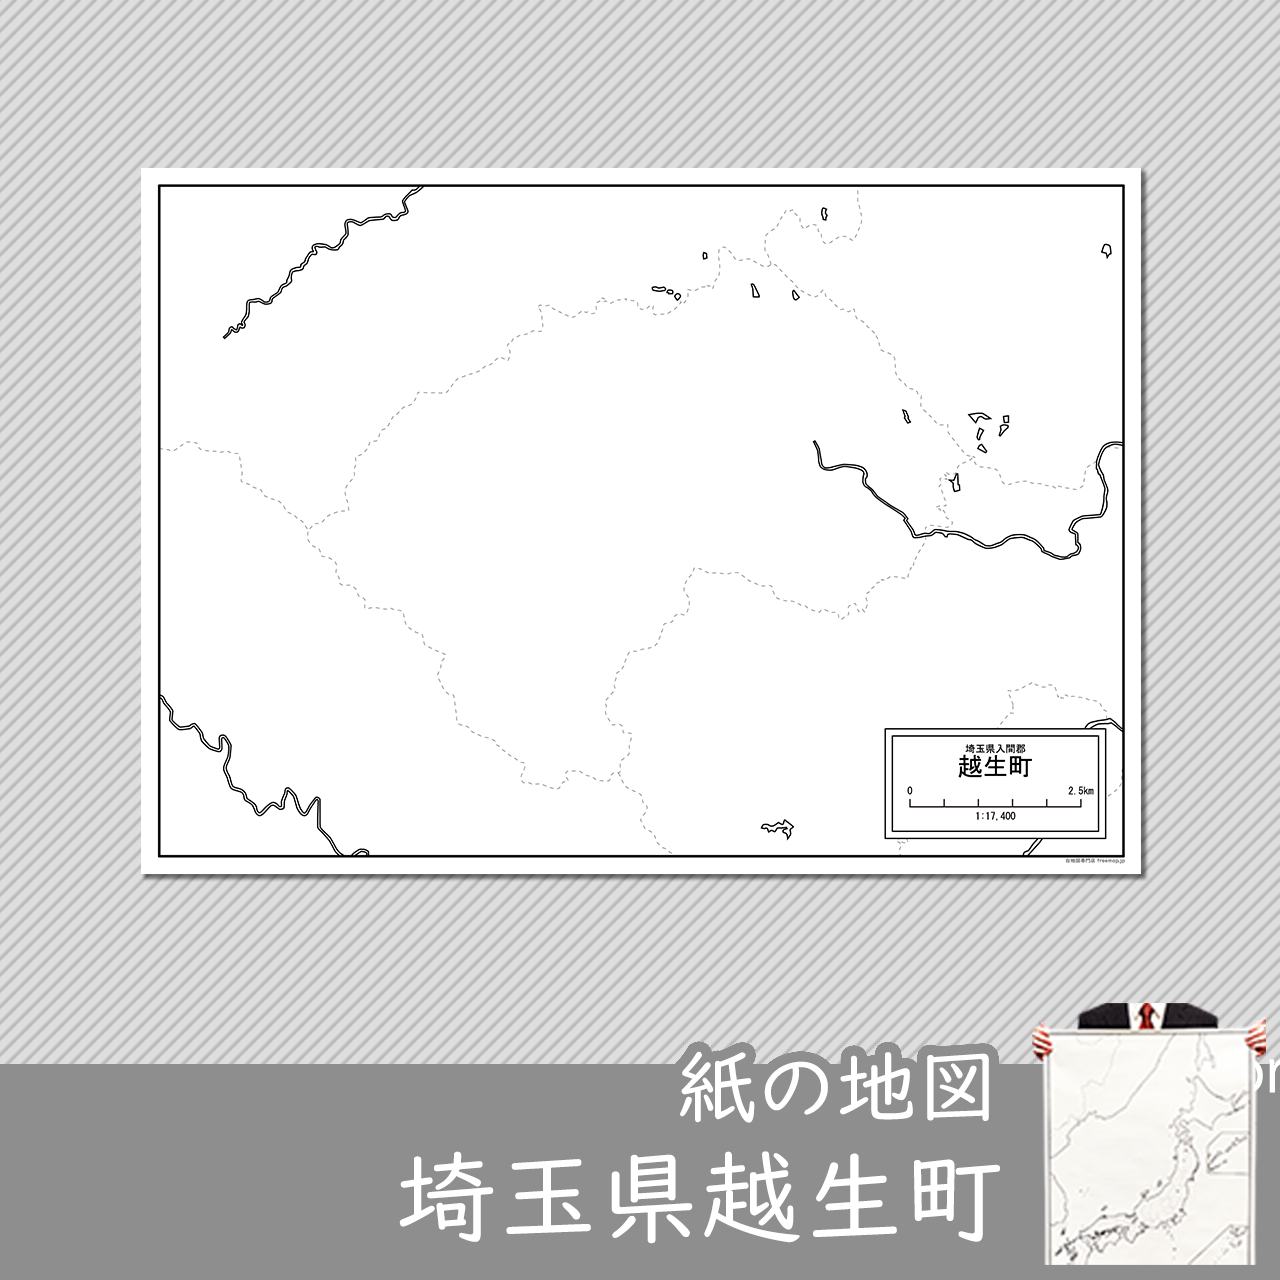 越生町の紙の白地図のサムネイル